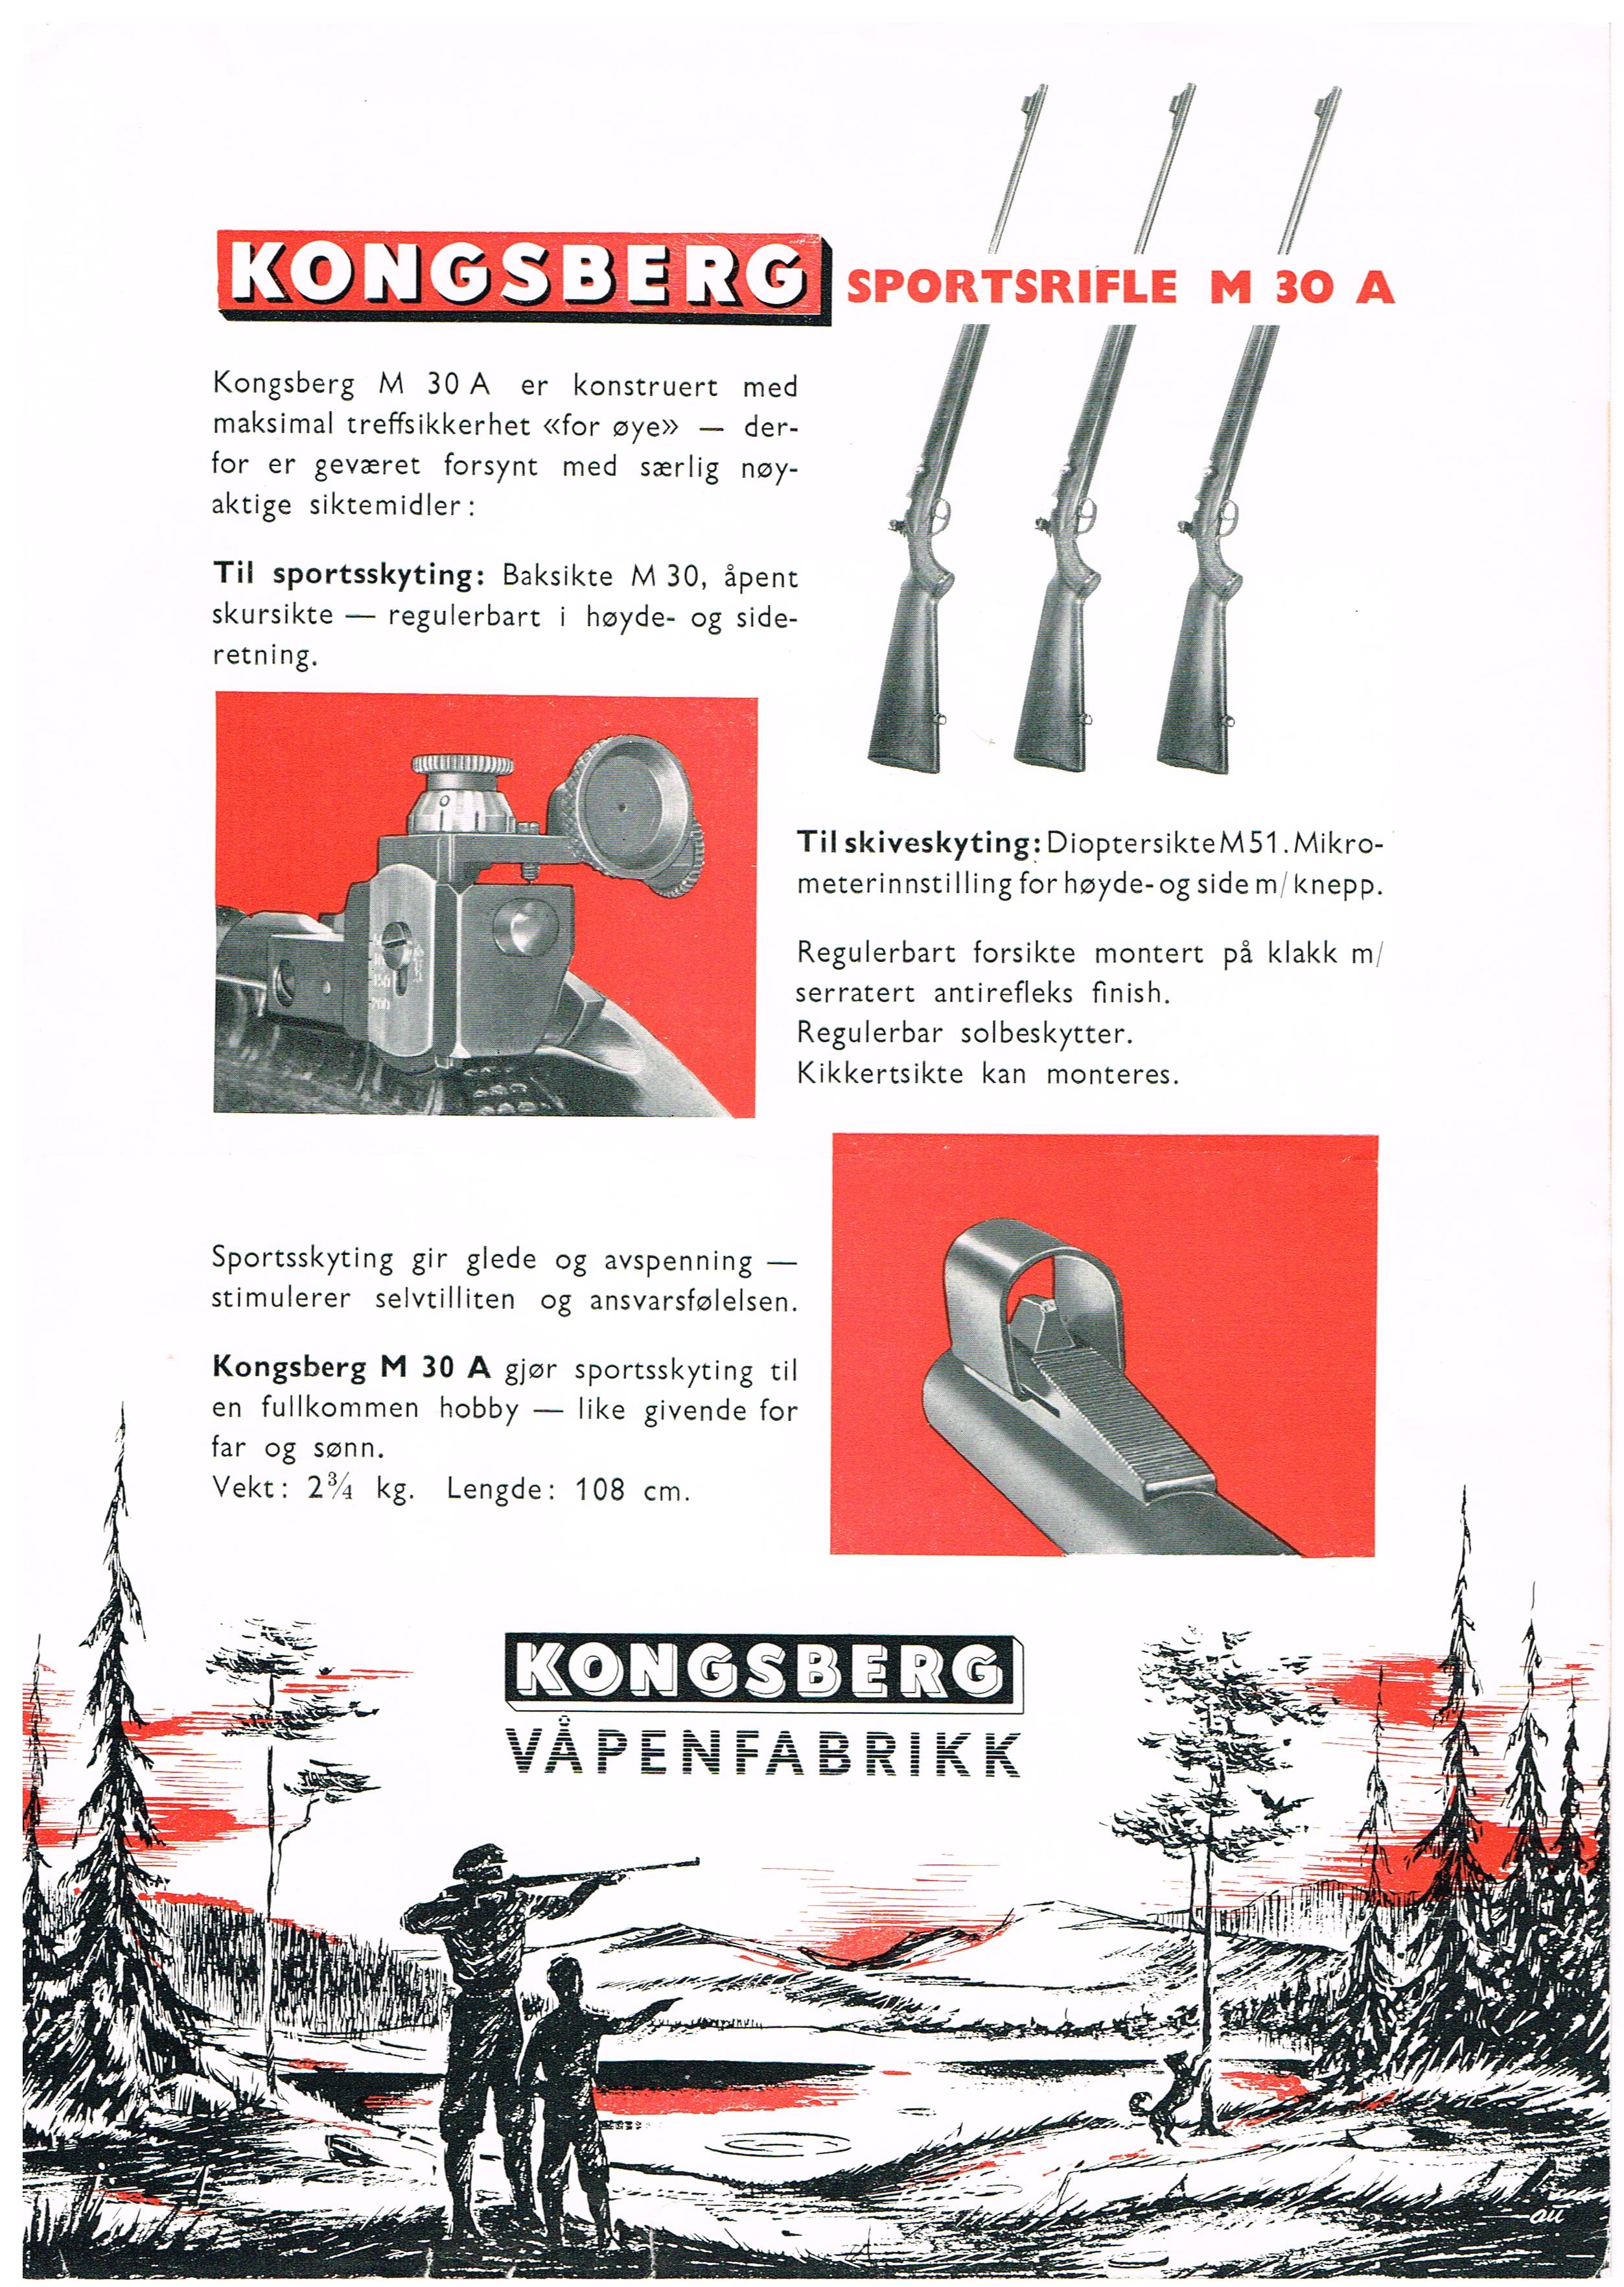 ./guns/salong/bilder/Salong-Kongsberg-M30A-Reklame-2.jpg